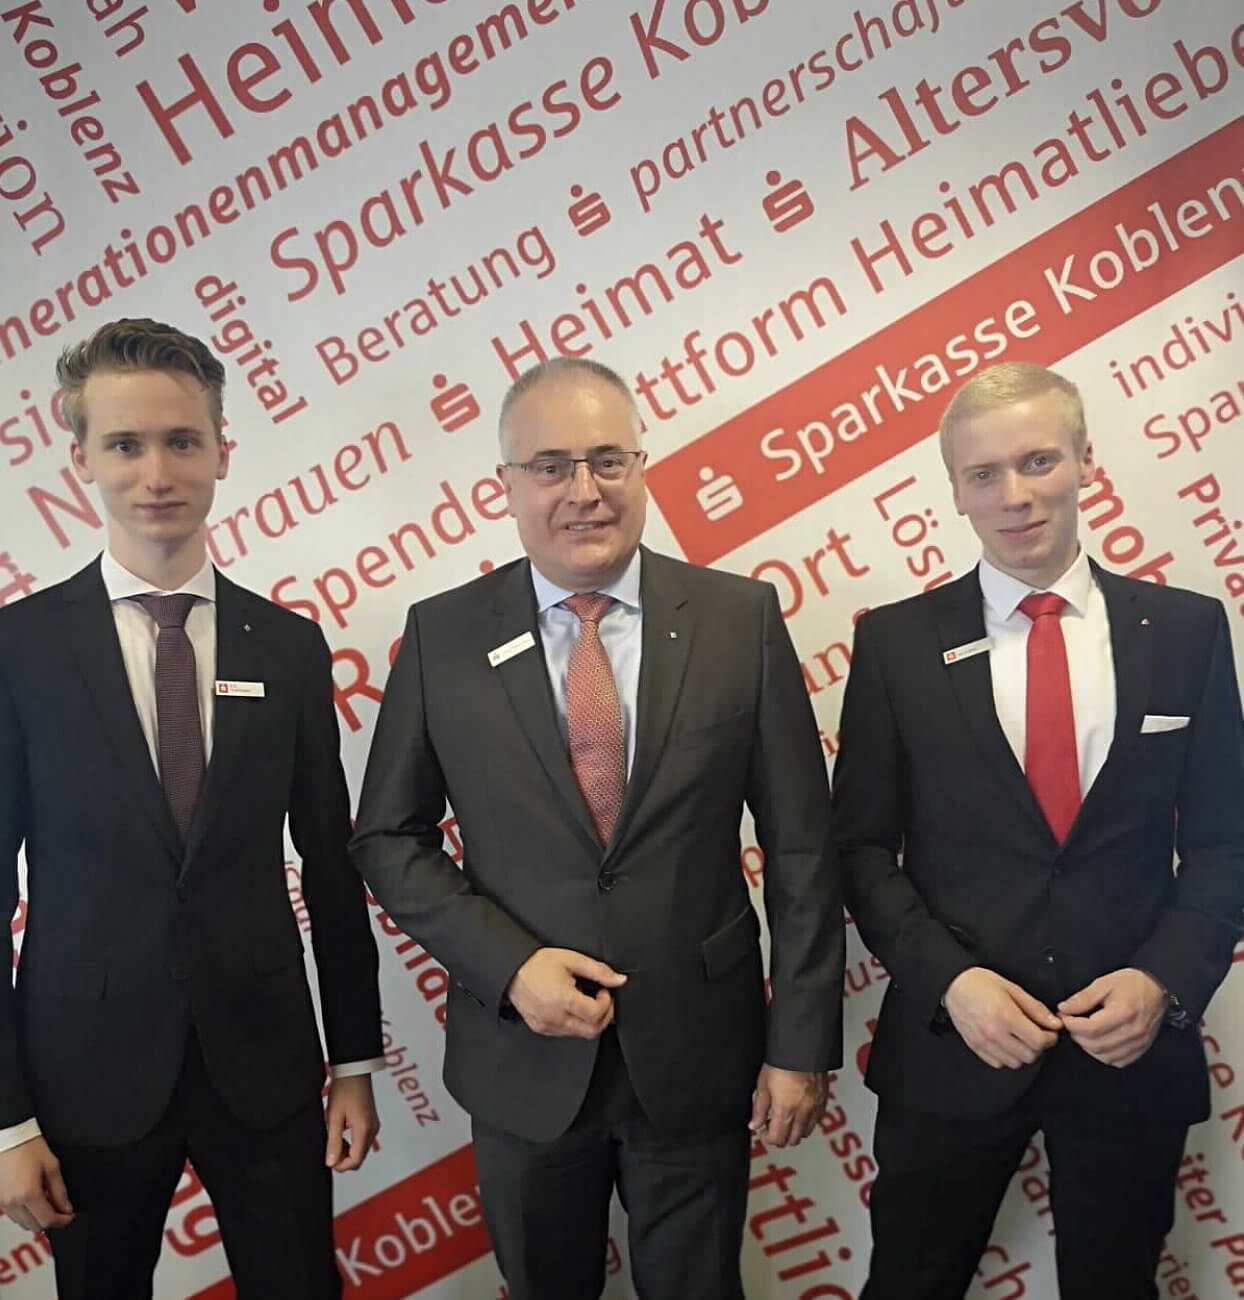 Brezelrunde mit dem Vorstand: Vorstand Jörg Perscheid mit unseren Azubis Erik Strottmann und Jan Krämer (rechts)